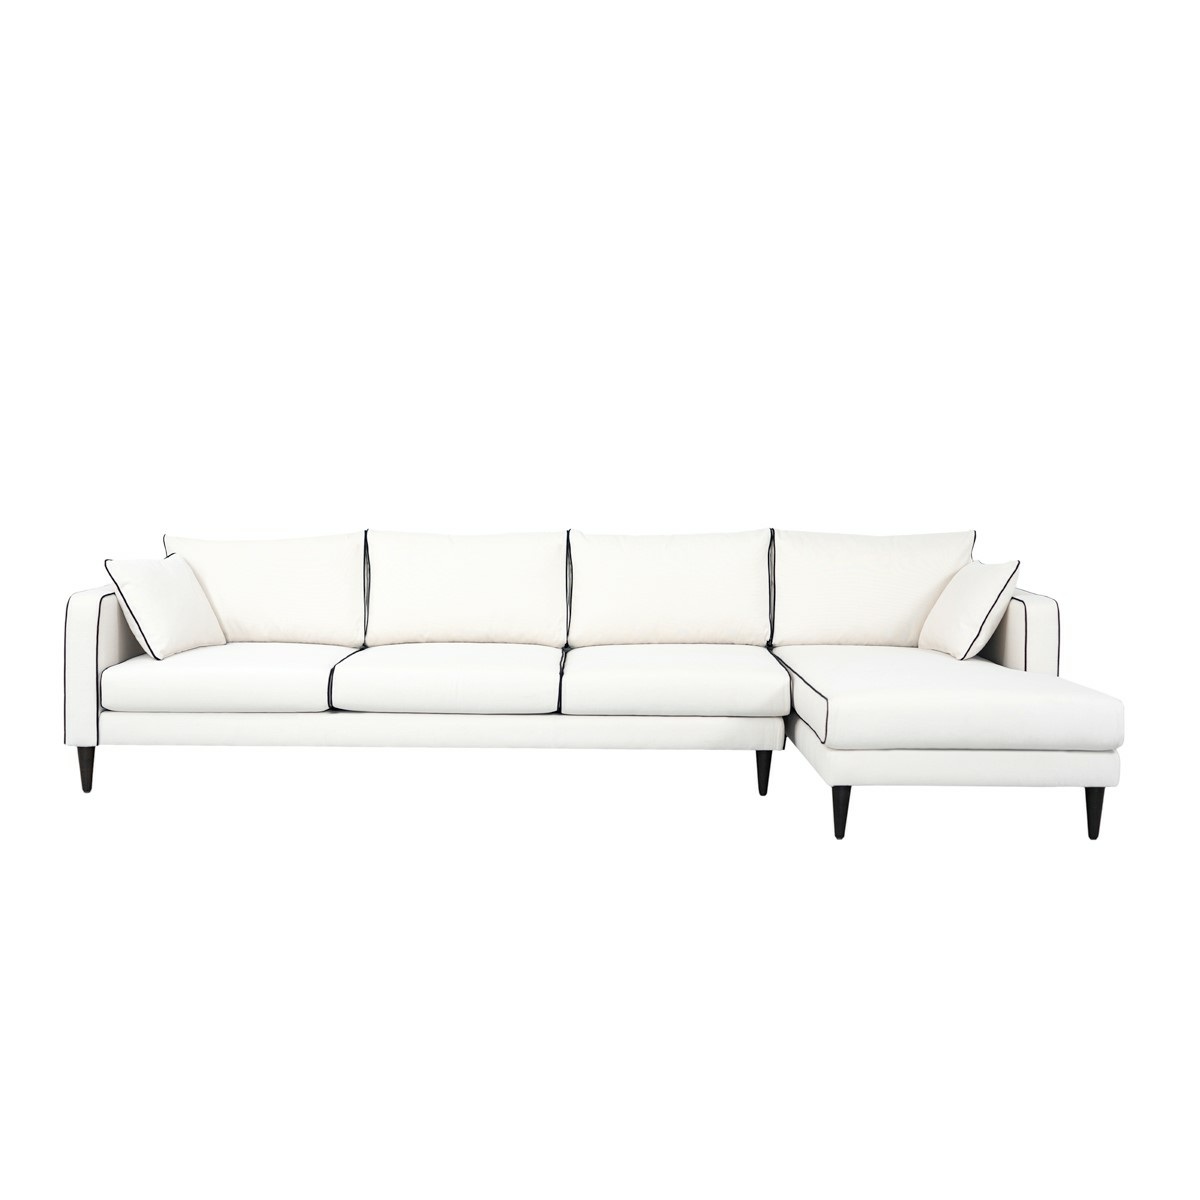 Noa corner sofa - Right angle, Different sizes - Cotton - image 1